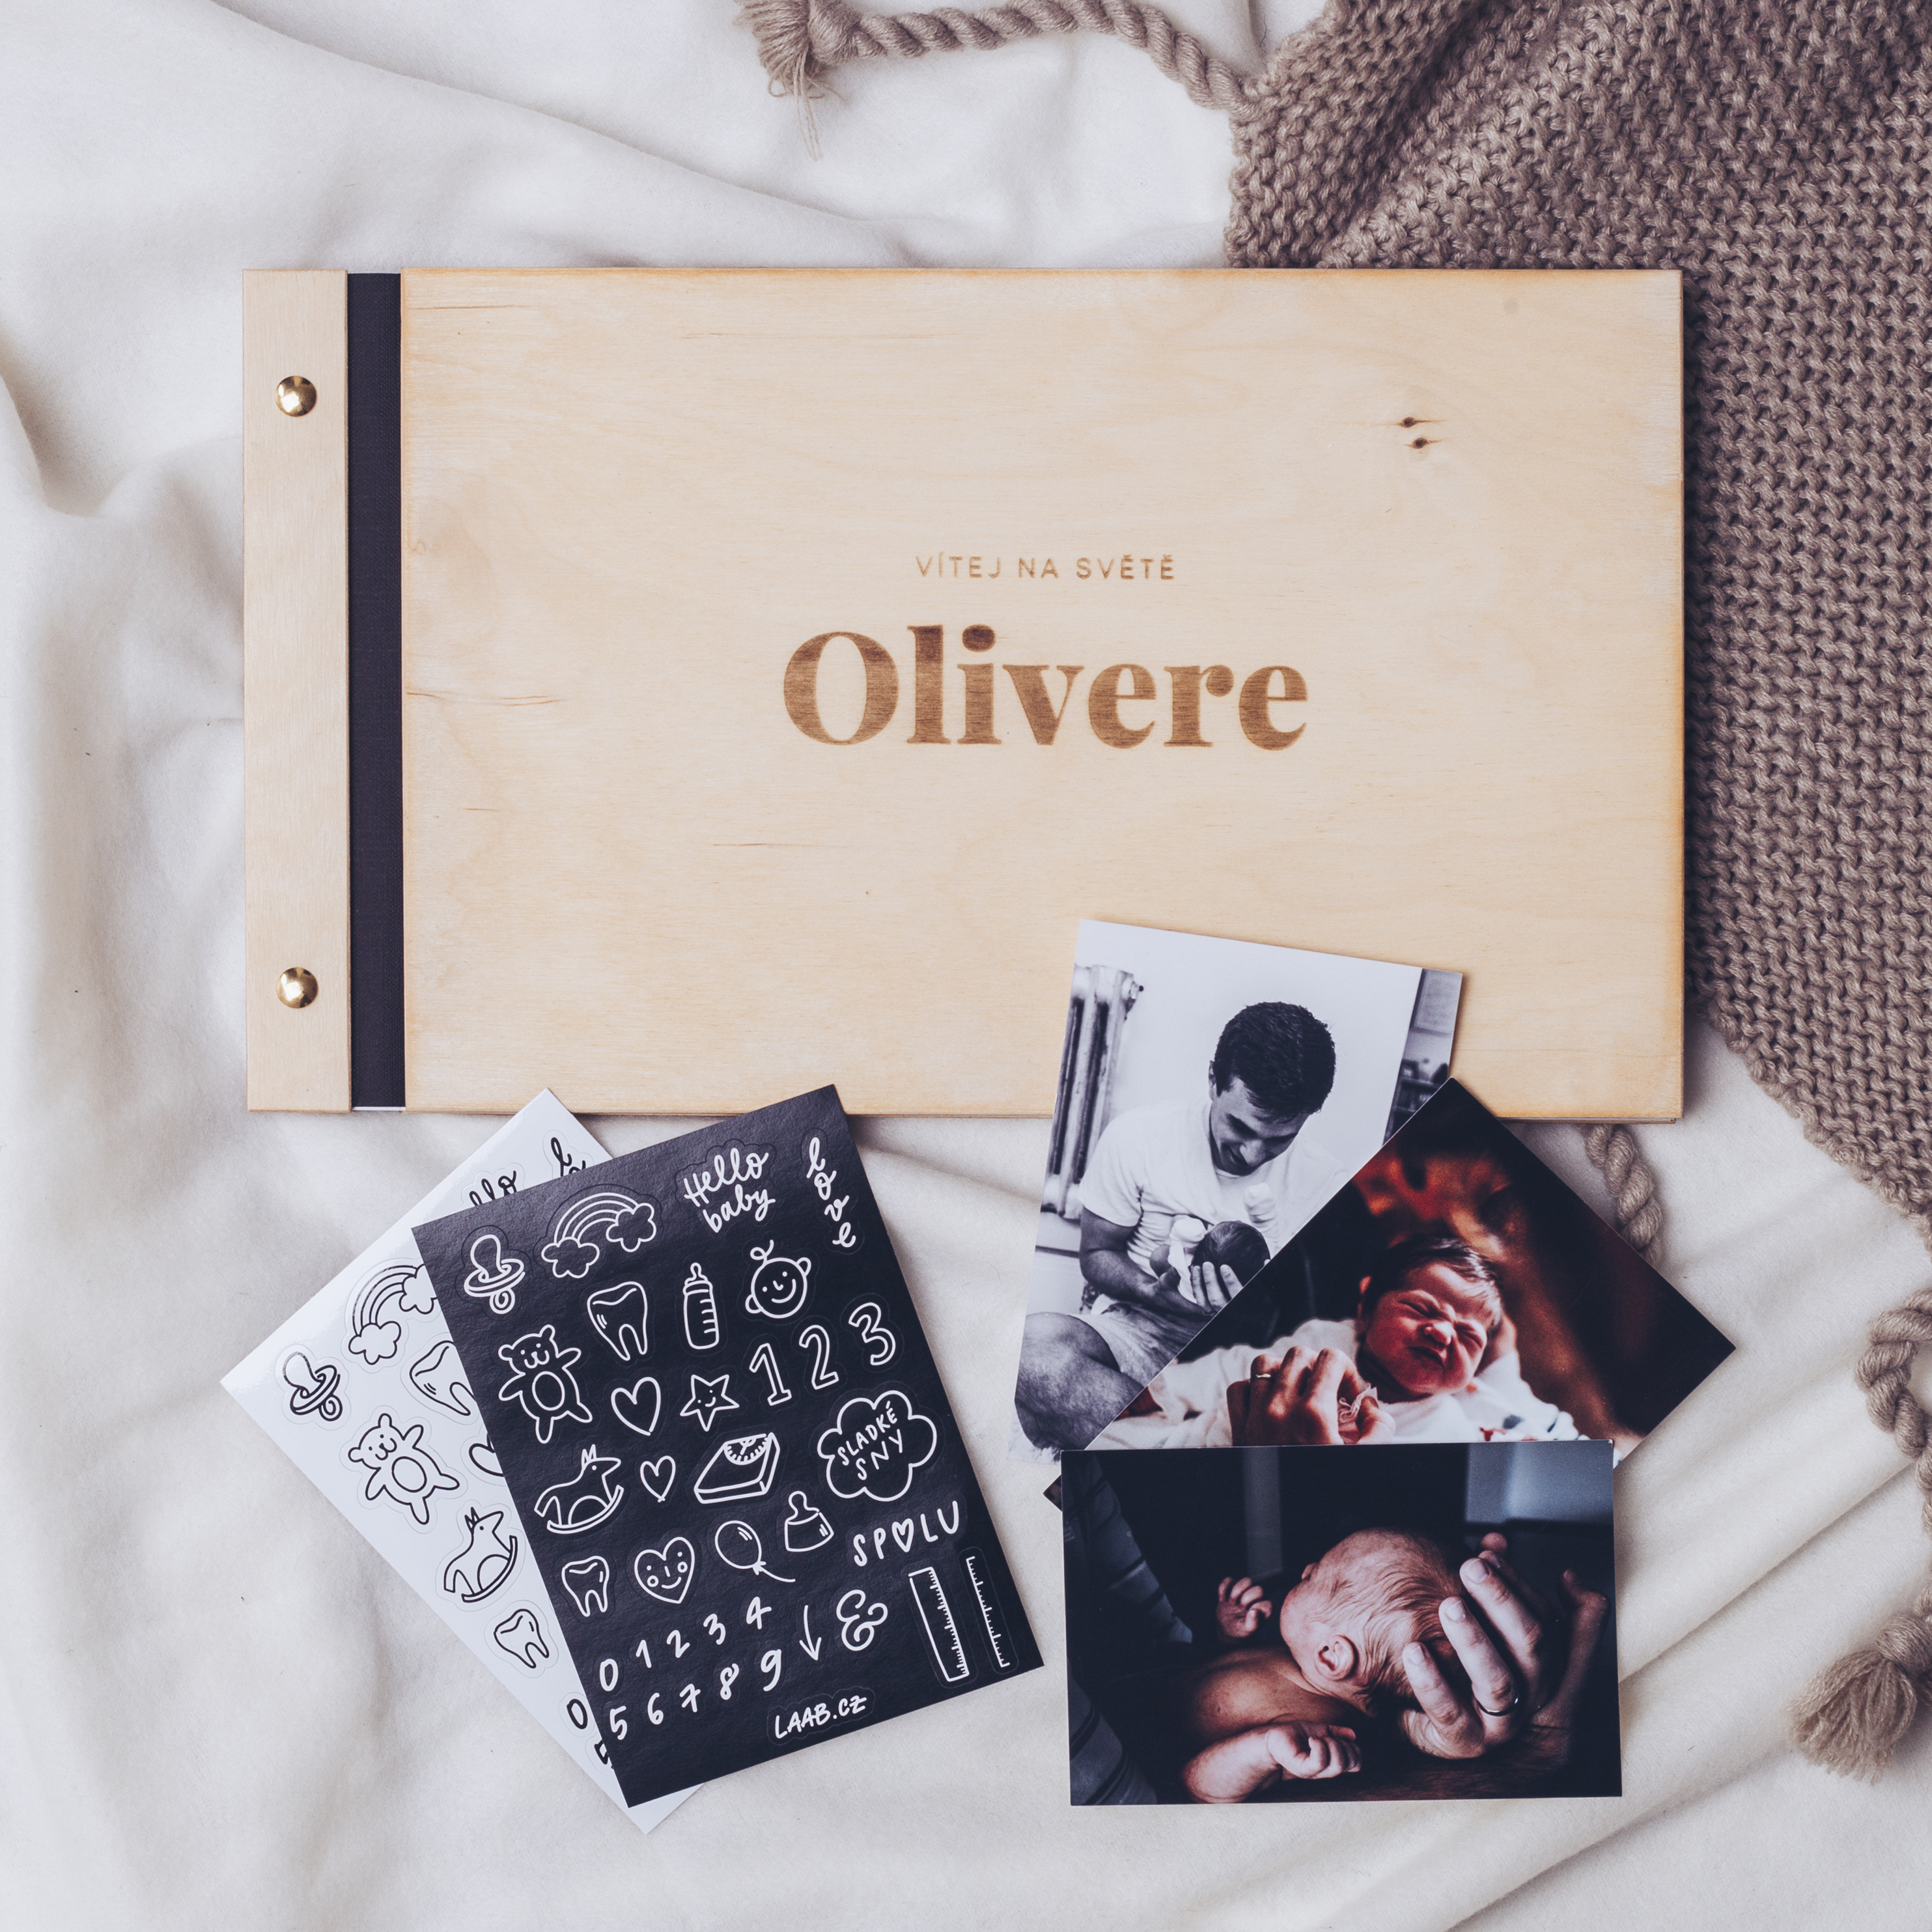 dřevěné fotoalbum Oliver: FORMÁT FOTOALBA na šířku, POČET LISTŮ 25 s prokladovými listy, FORMÁT FOTOALBA na šířku, POČET LISTŮ 25, BARVA LISTŮ černá